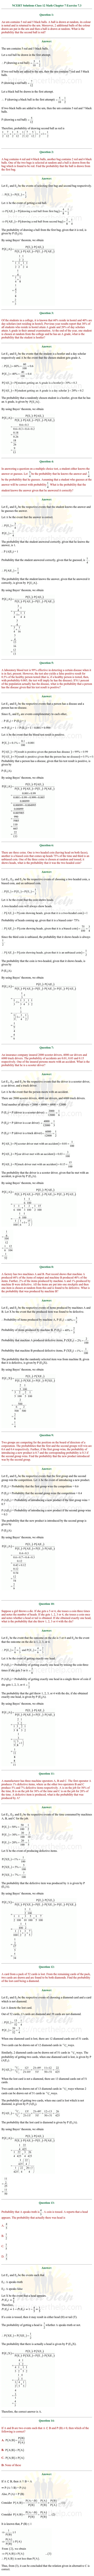 ex.13.3 Class 12 Math Chapter 13 ncert solutions